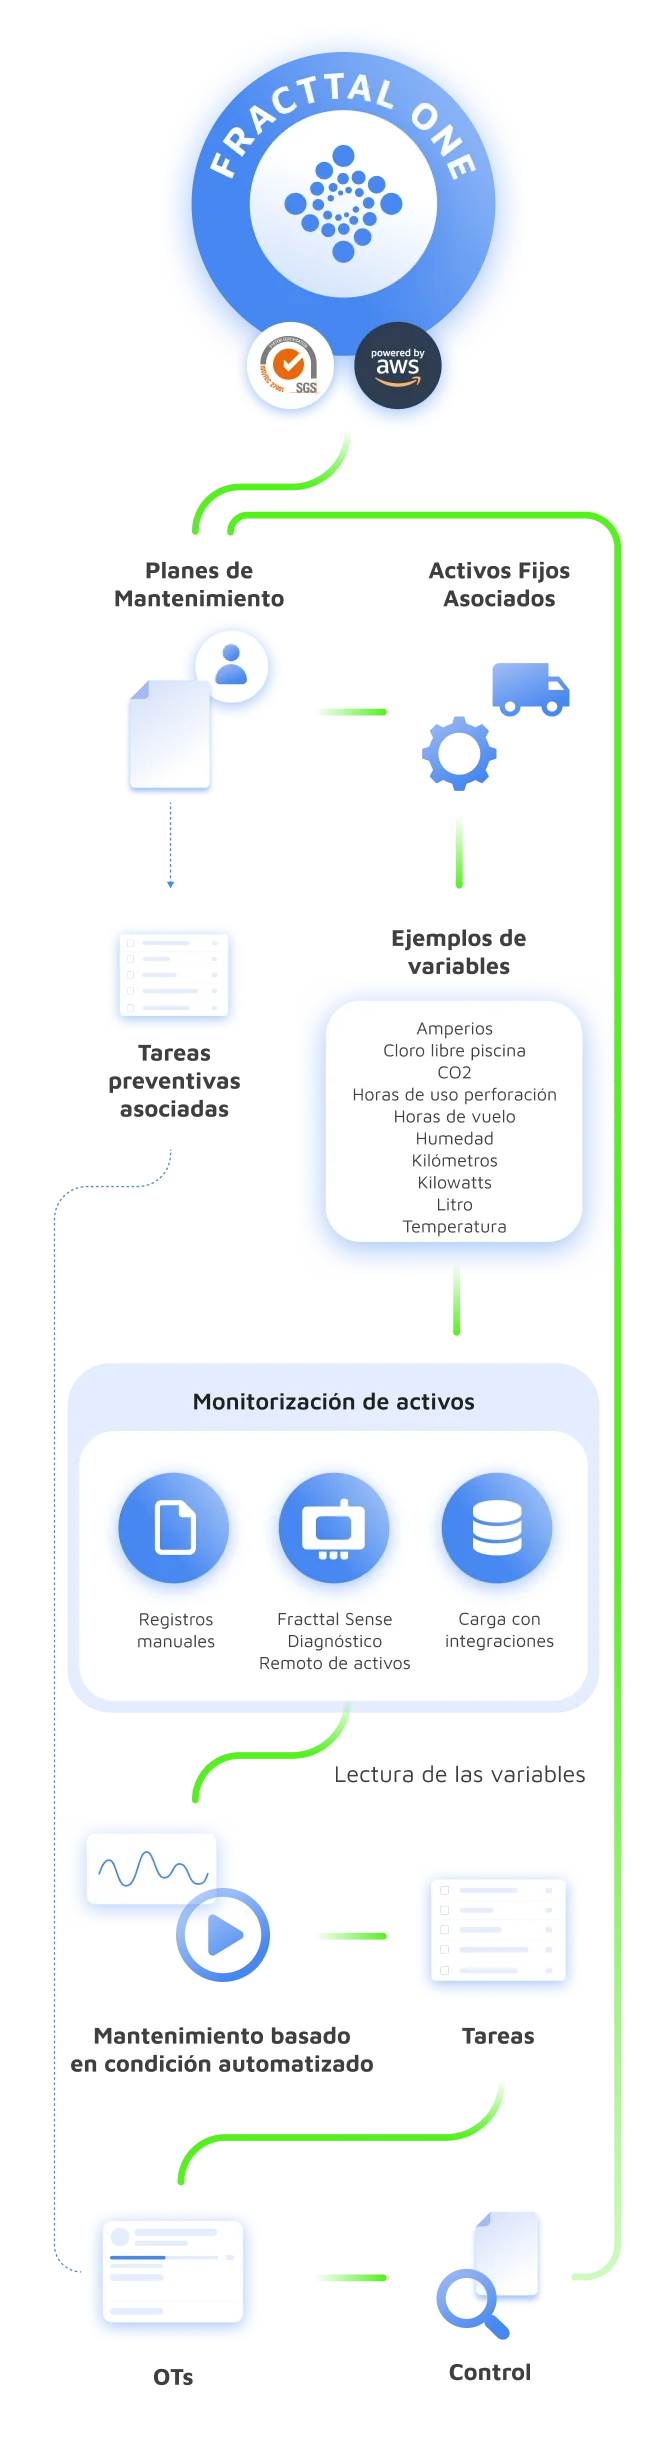 Proceso de monitorización y planificación con Fracttal One y sensores IoT